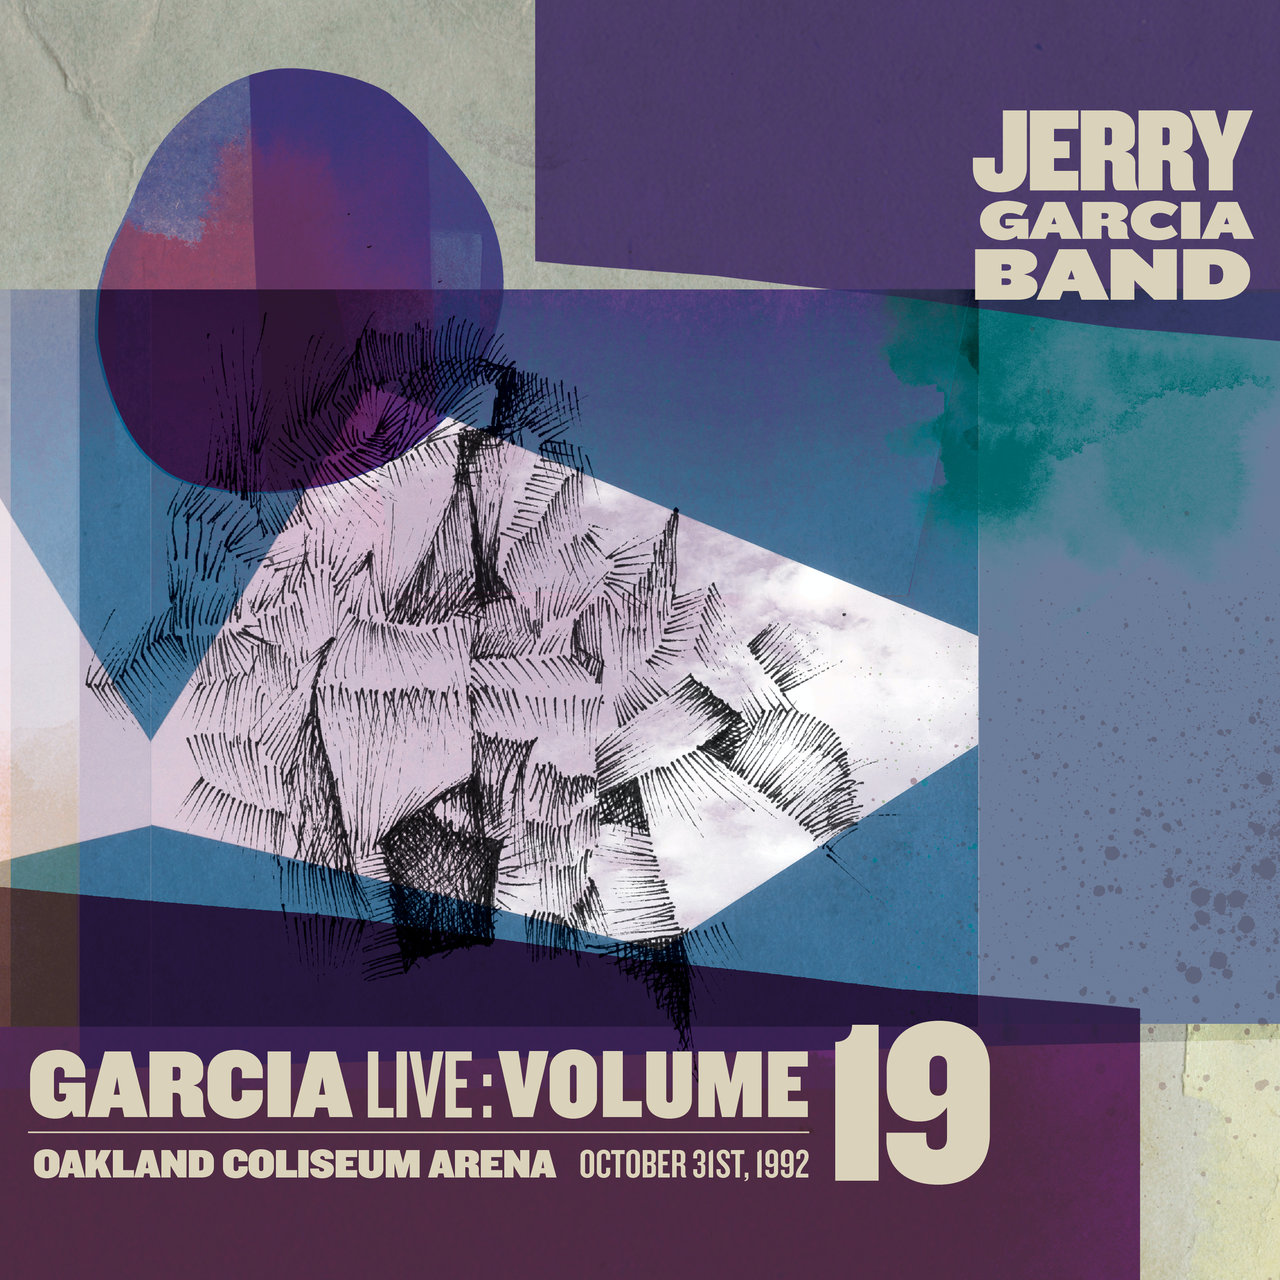 Jerry Garcia Band - GarciaLive Volume 19: October 31st, 1992 Oakland Coliseum Arena (2017) [FLAC 24bit/44,1kHz] Download